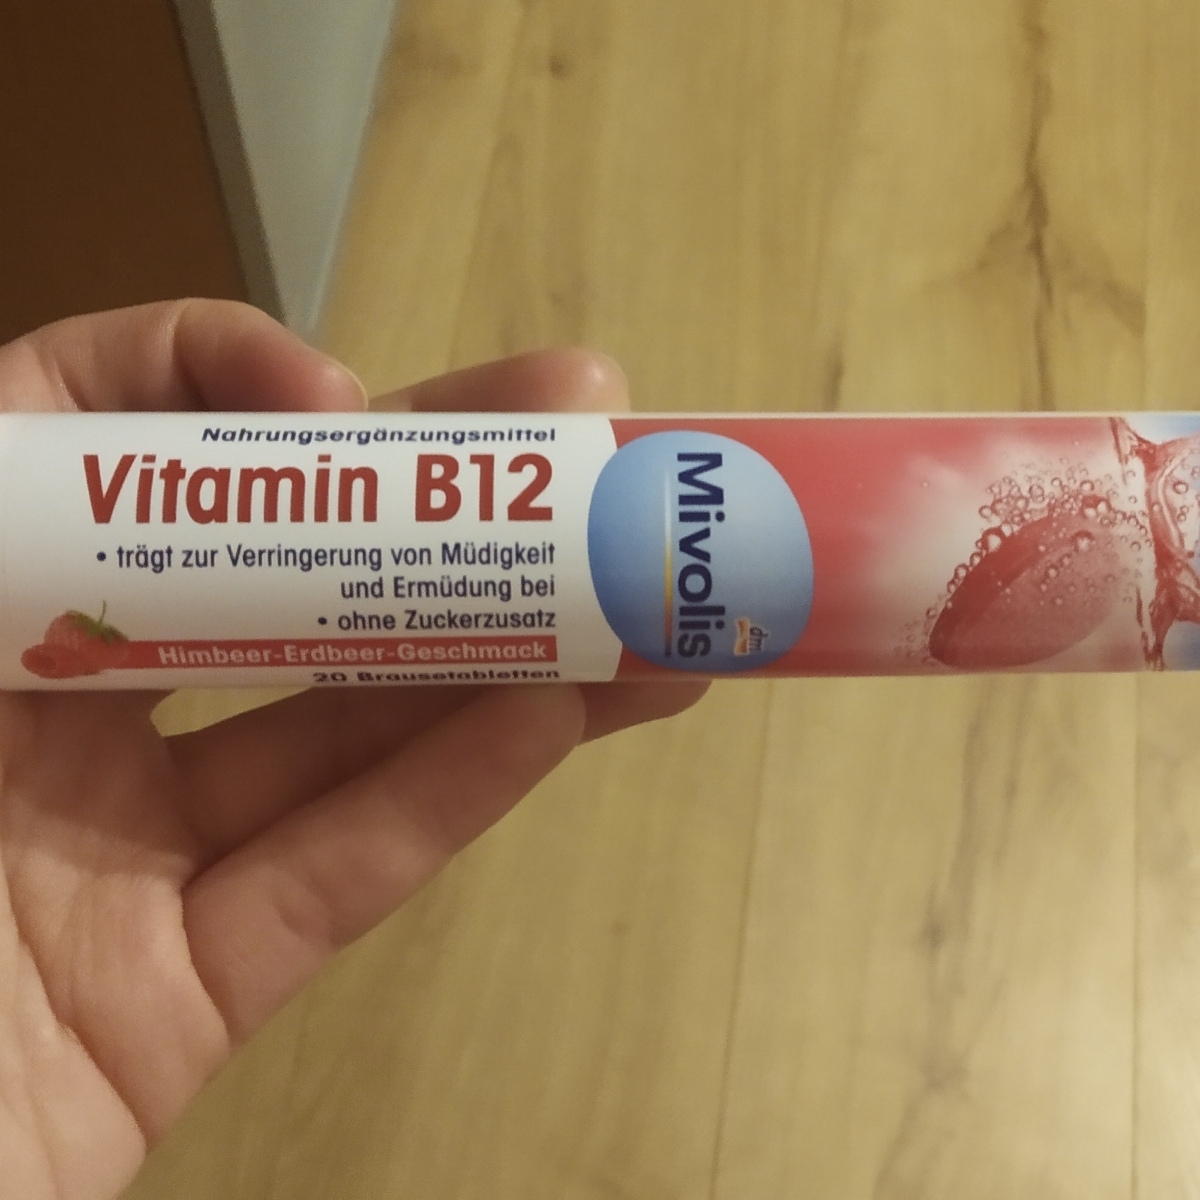 Mivolis Vitamin B12 Reviews | abillion